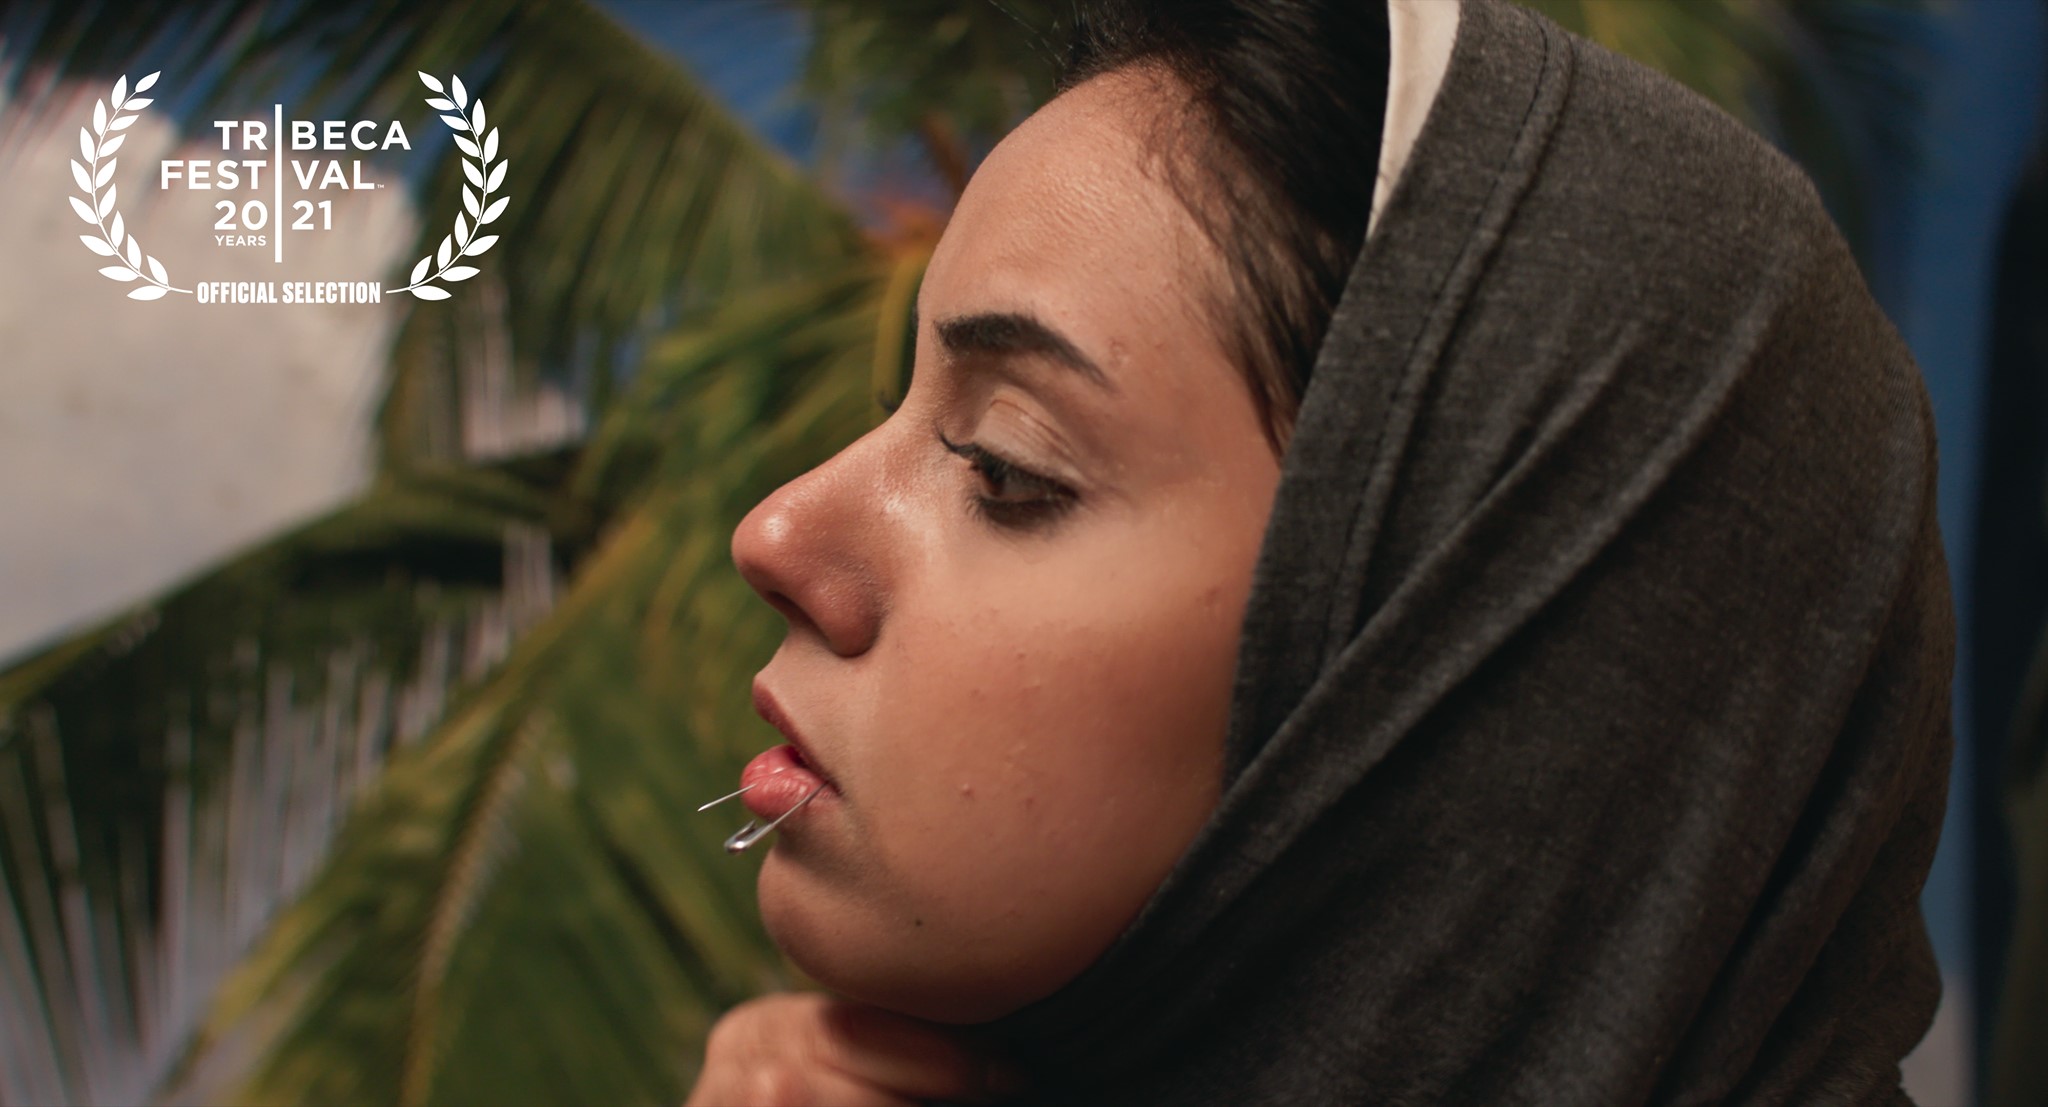 الفيلم المصري "سعاد" يفوز بجائزة أفضل ممثلة في مهرجان تريبيكا السينمائي العشرين بنيويورك